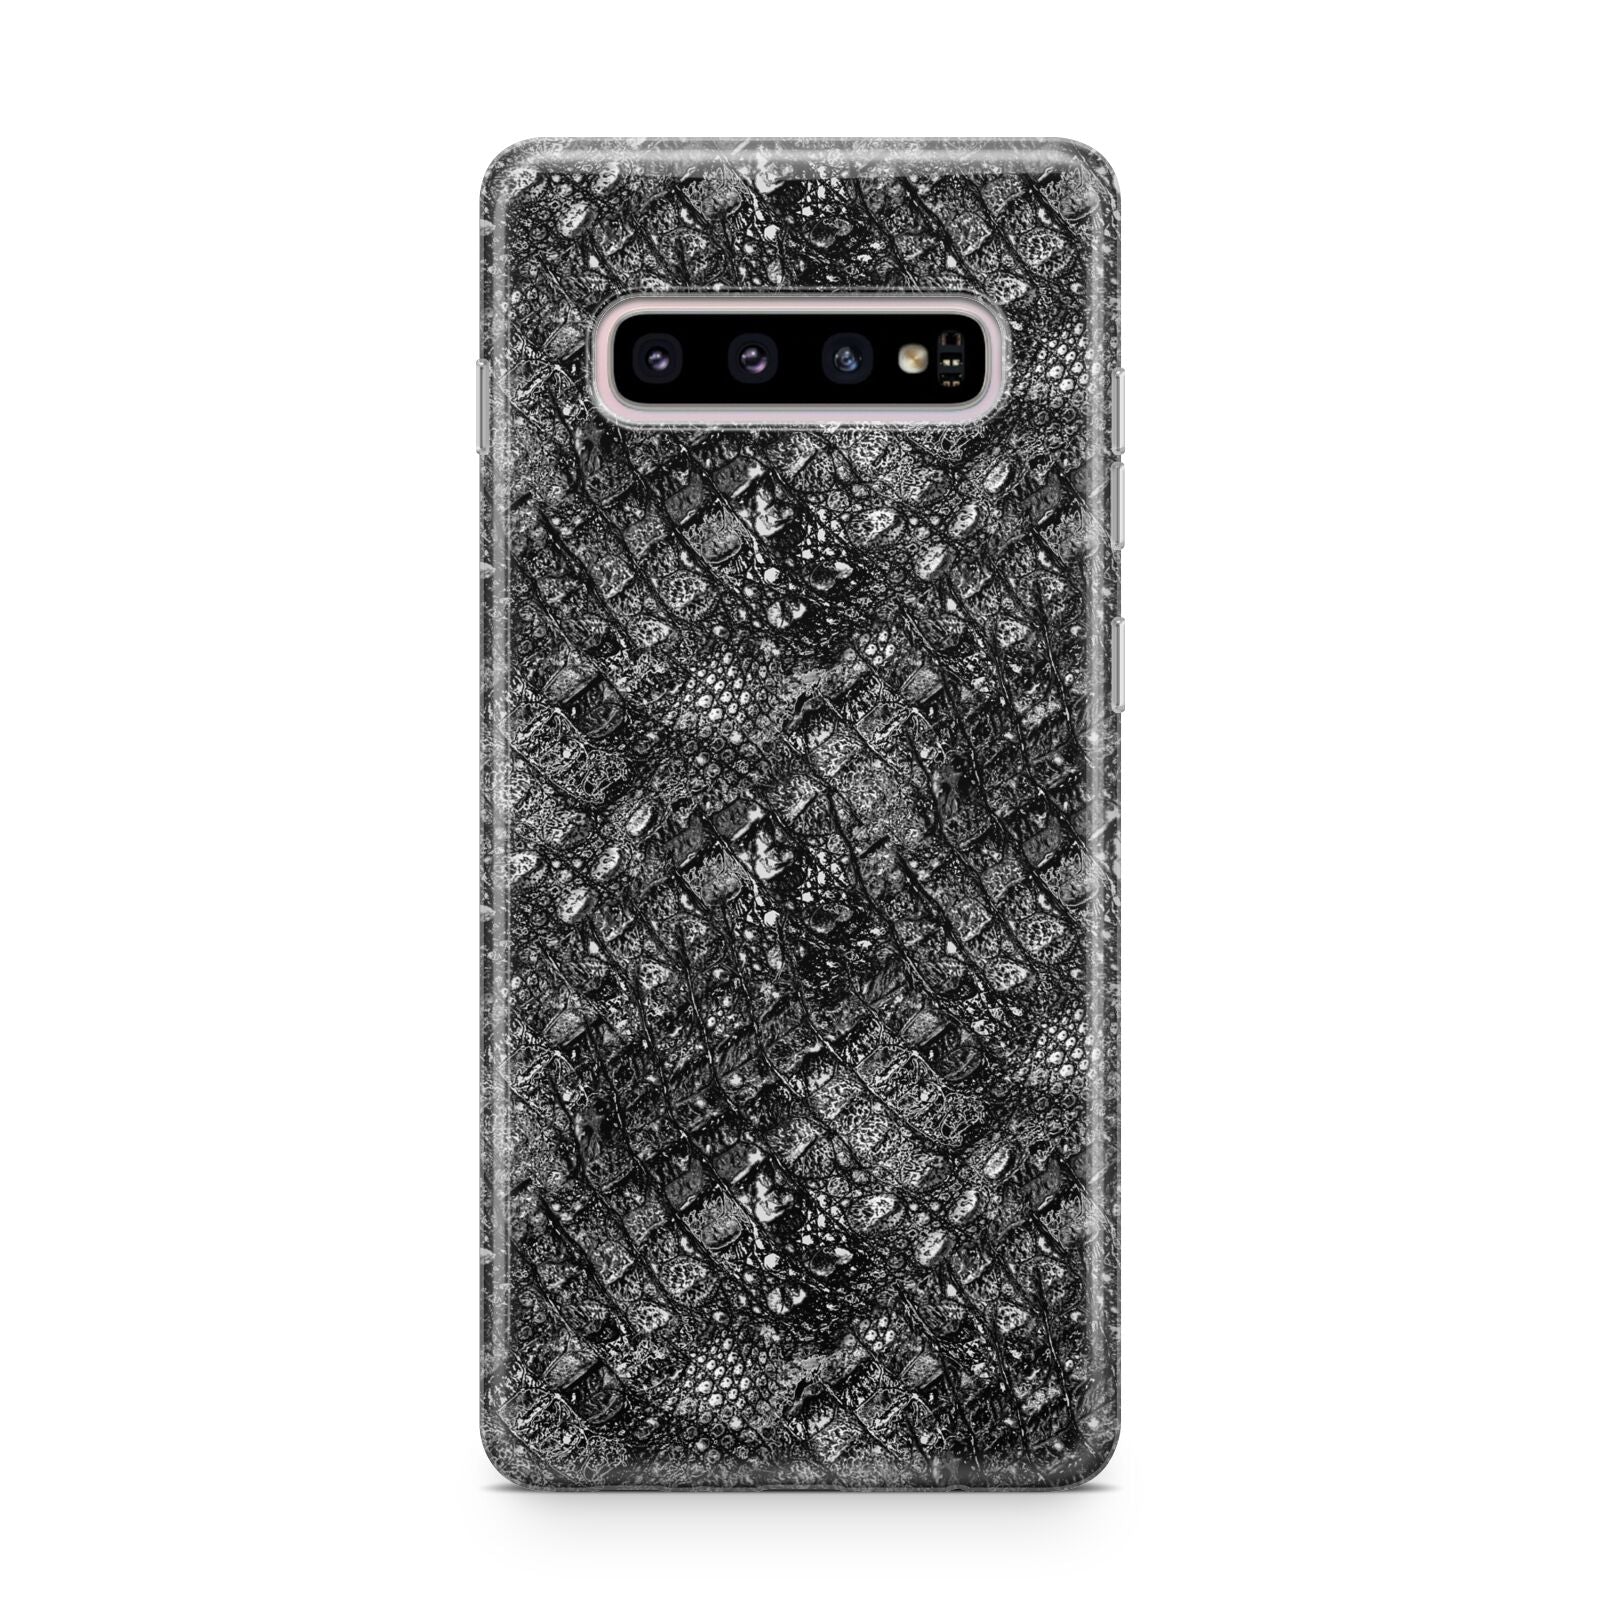 Snakeskin Design Samsung Galaxy S10 Plus Case